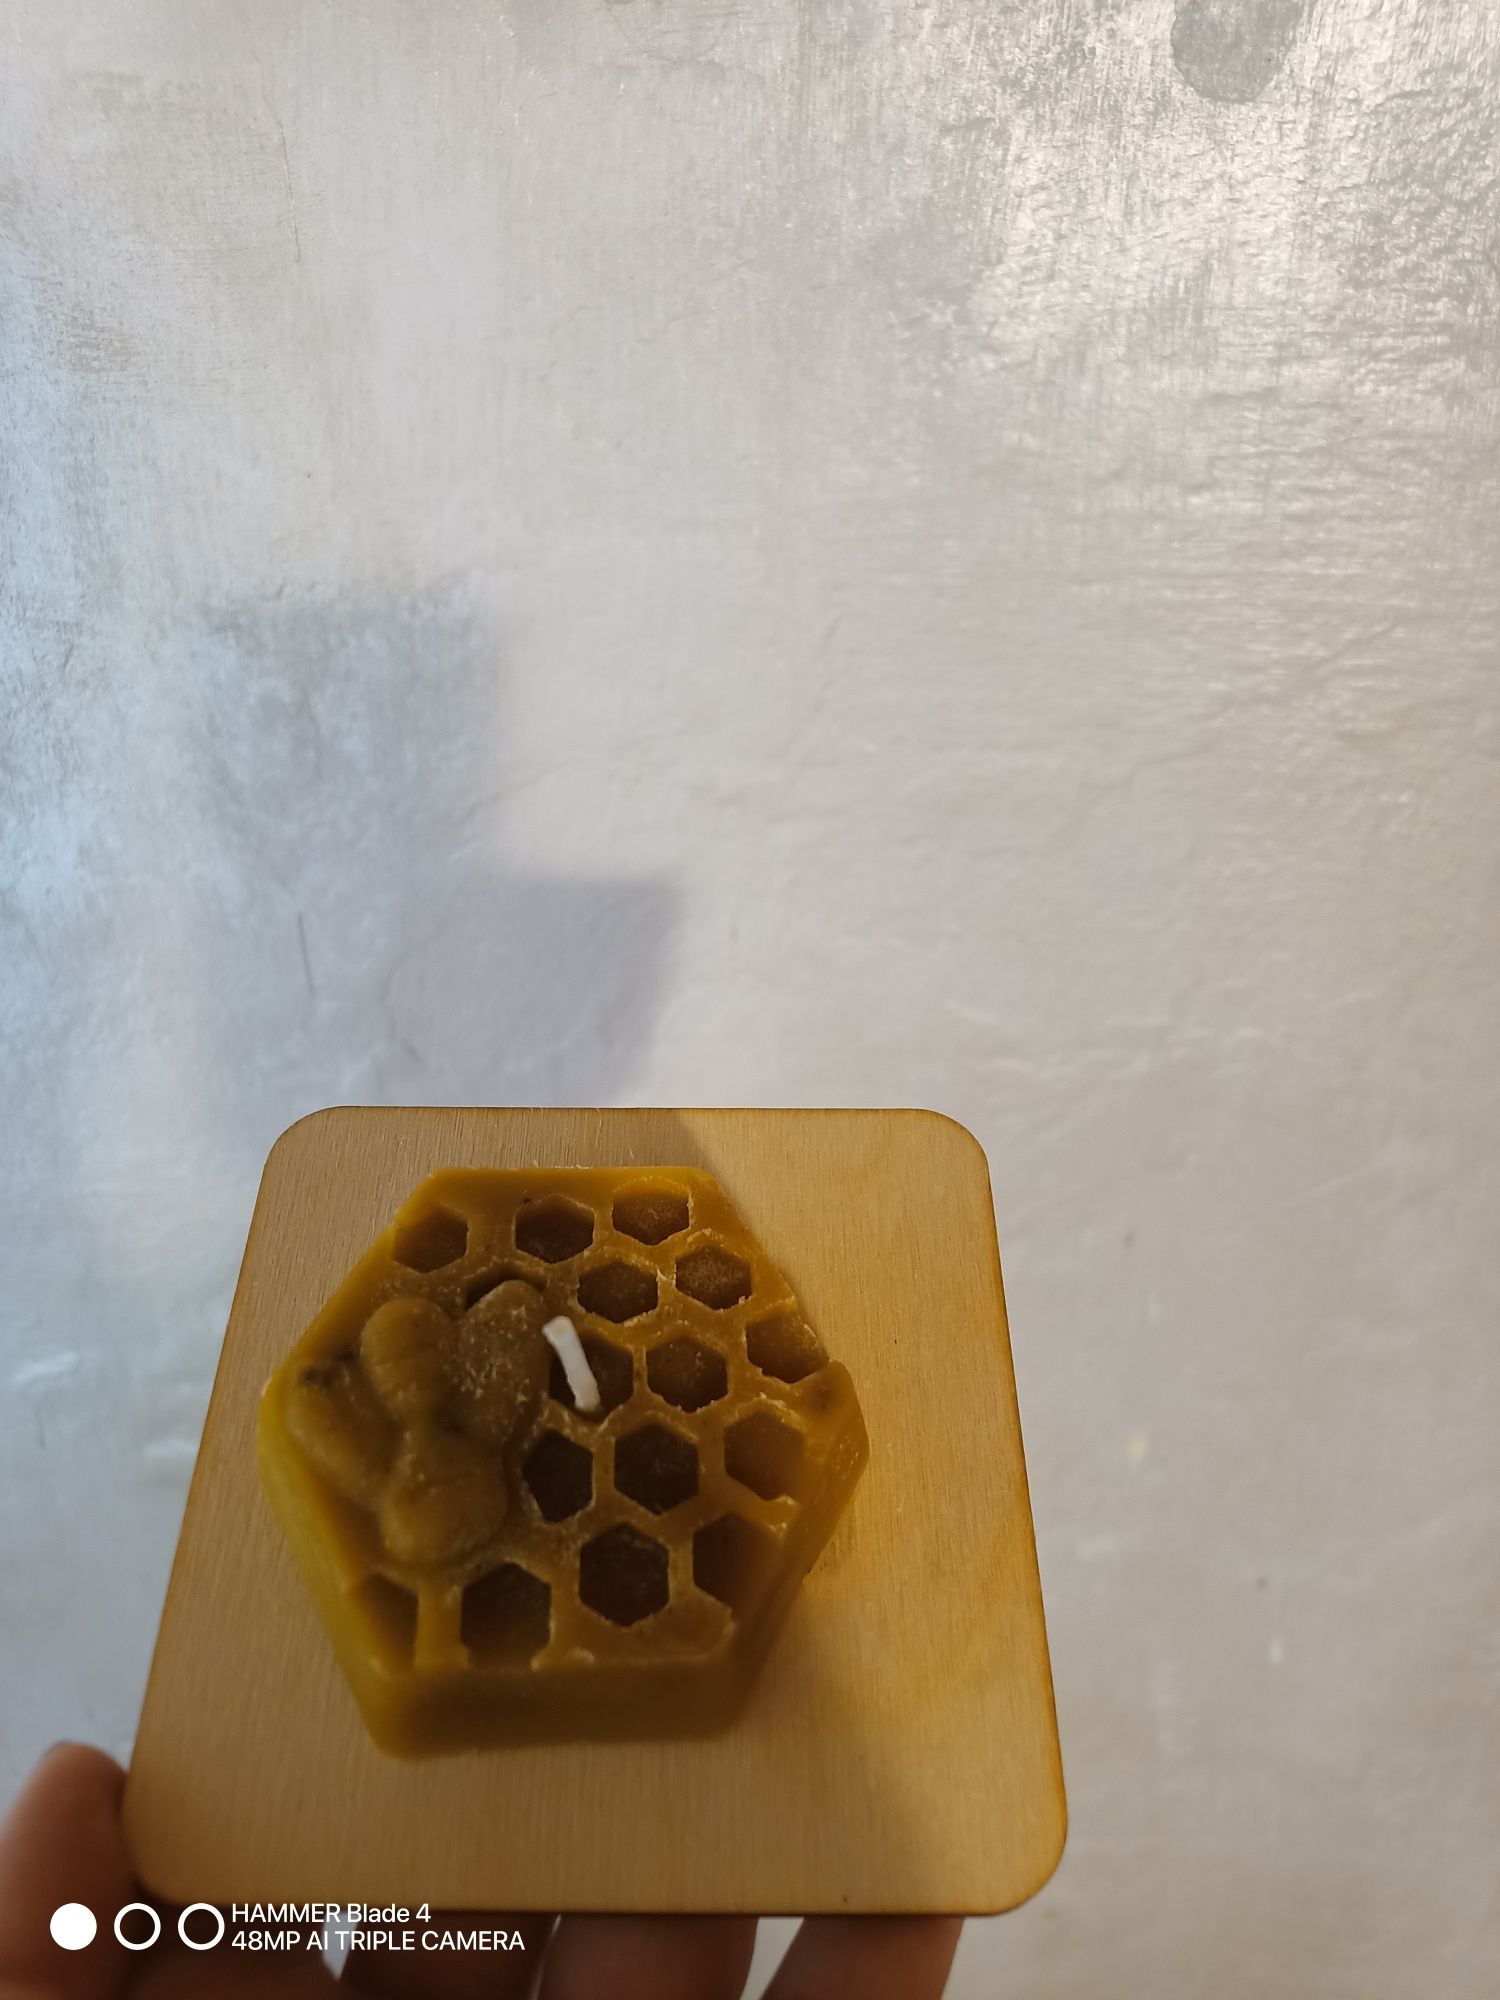 Świeczki z wosku pszczelego